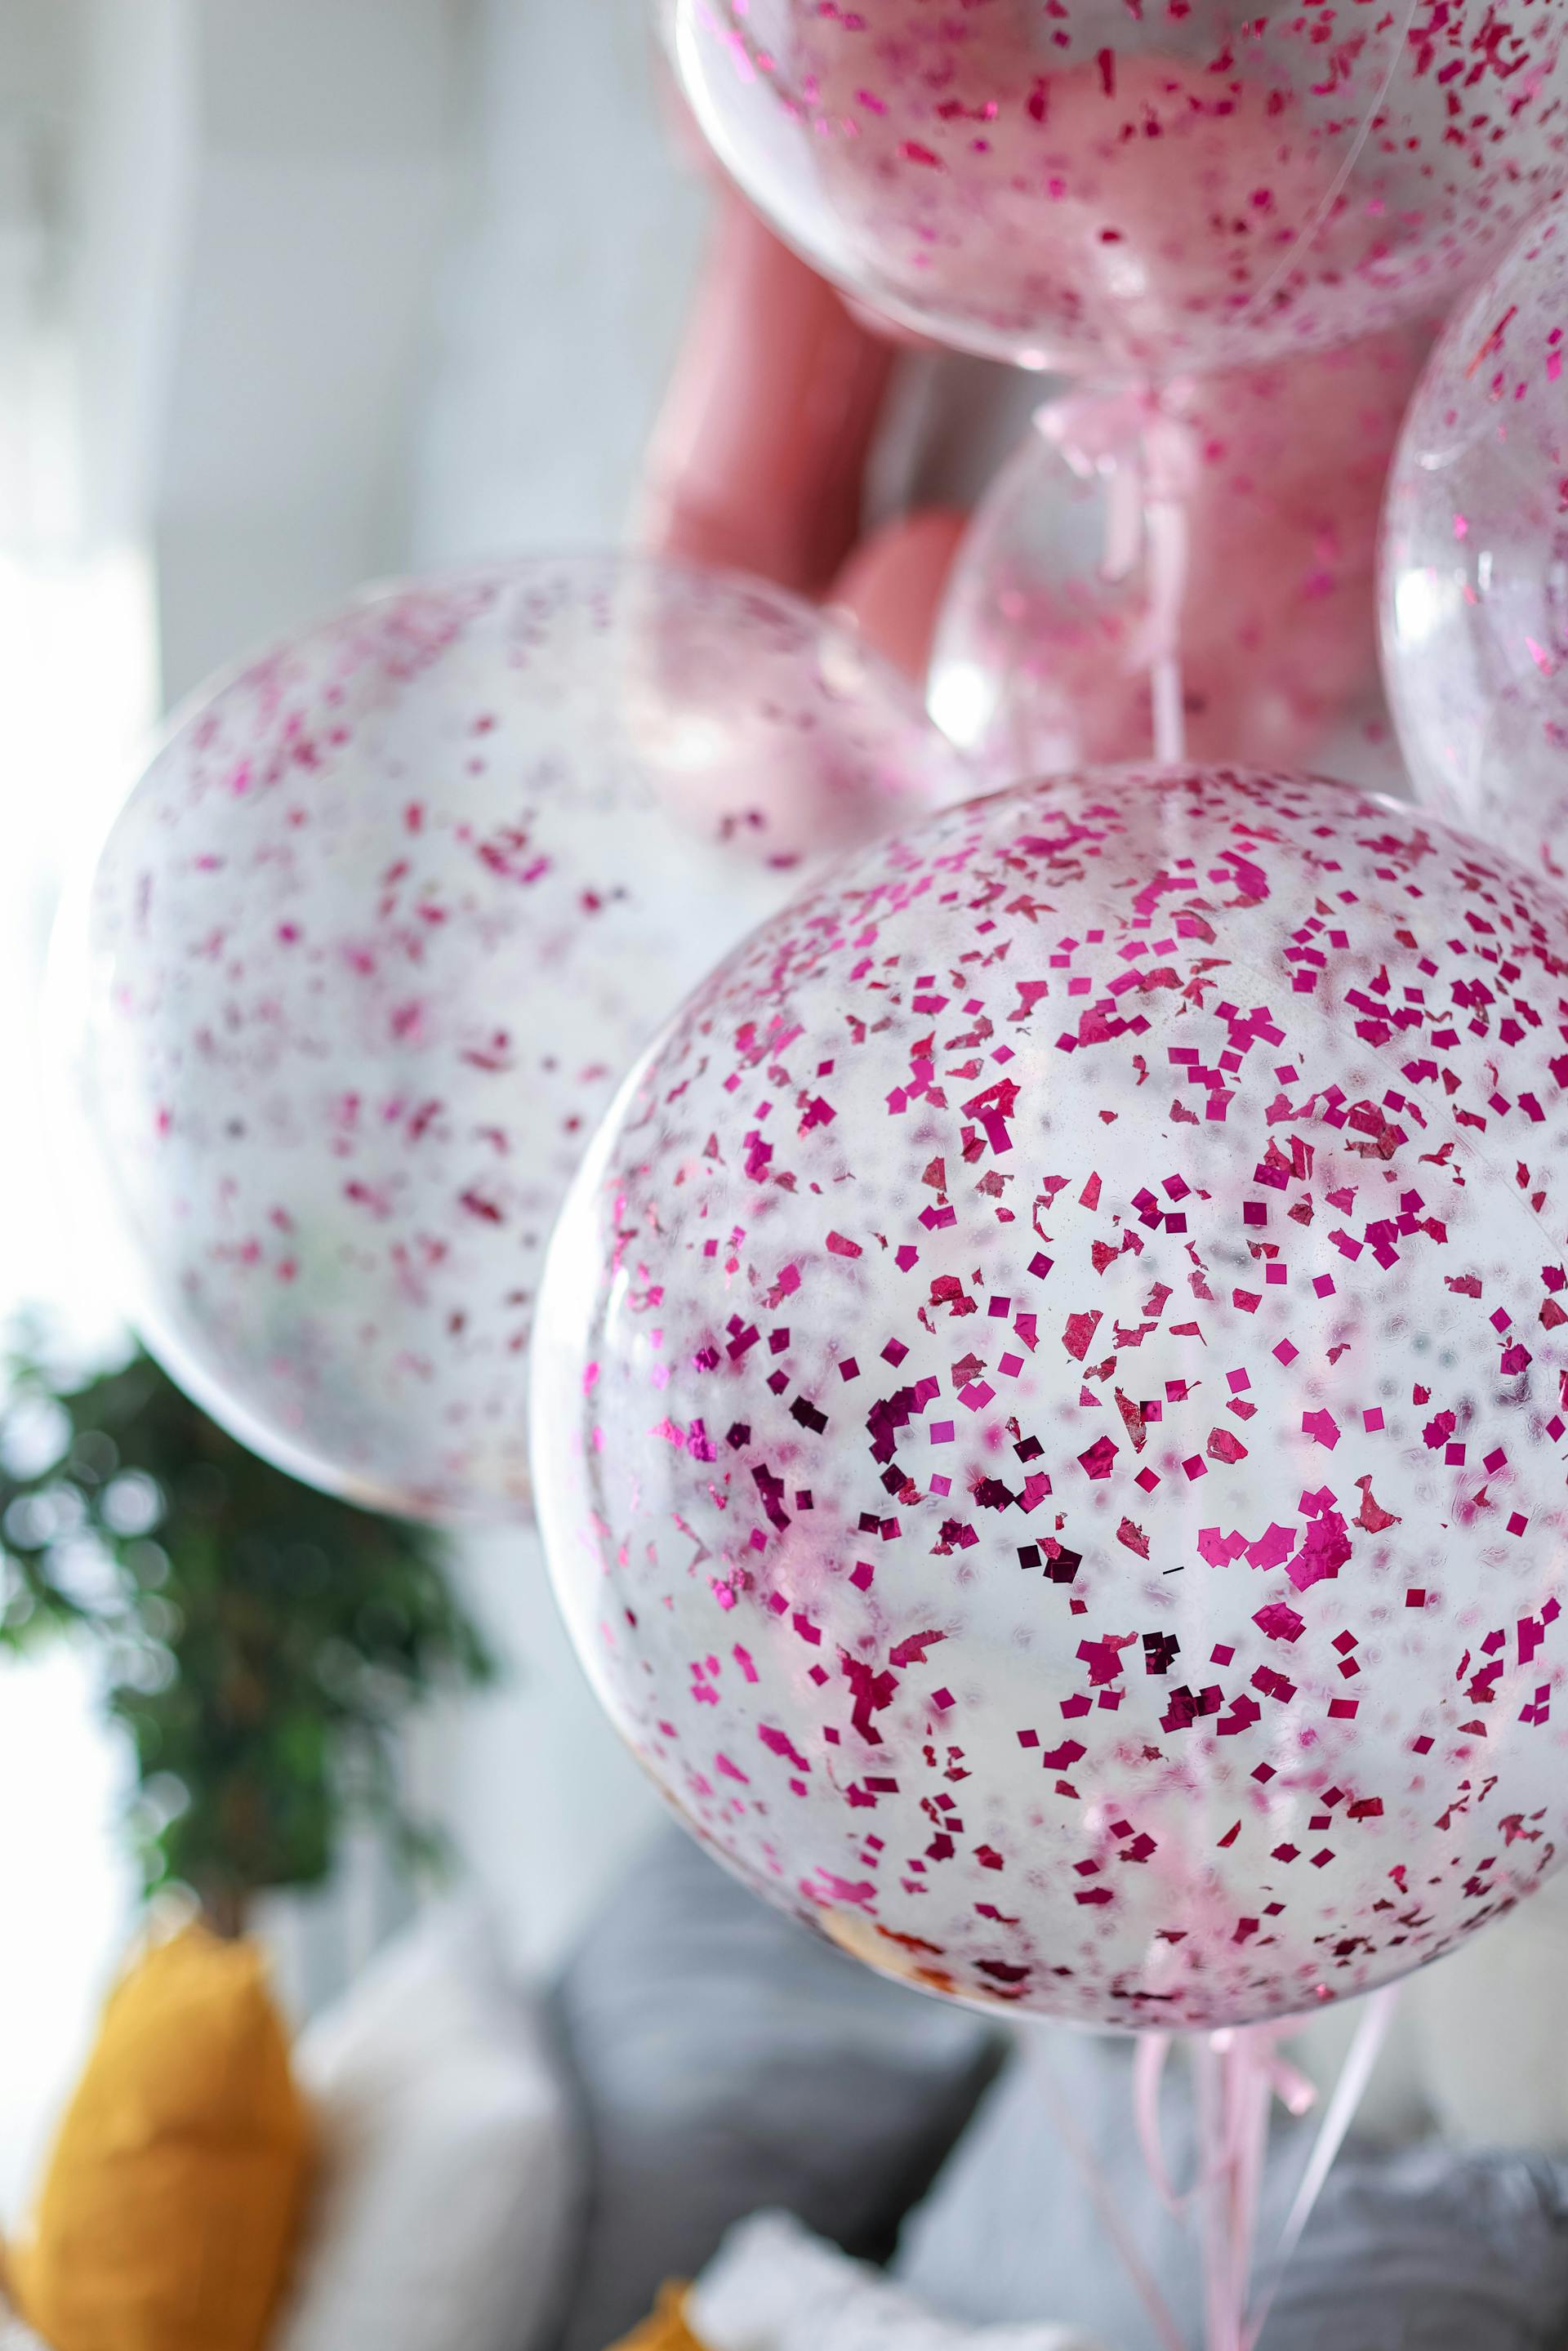 Ballons de baudruche à paillettes roses | Source : Pexels